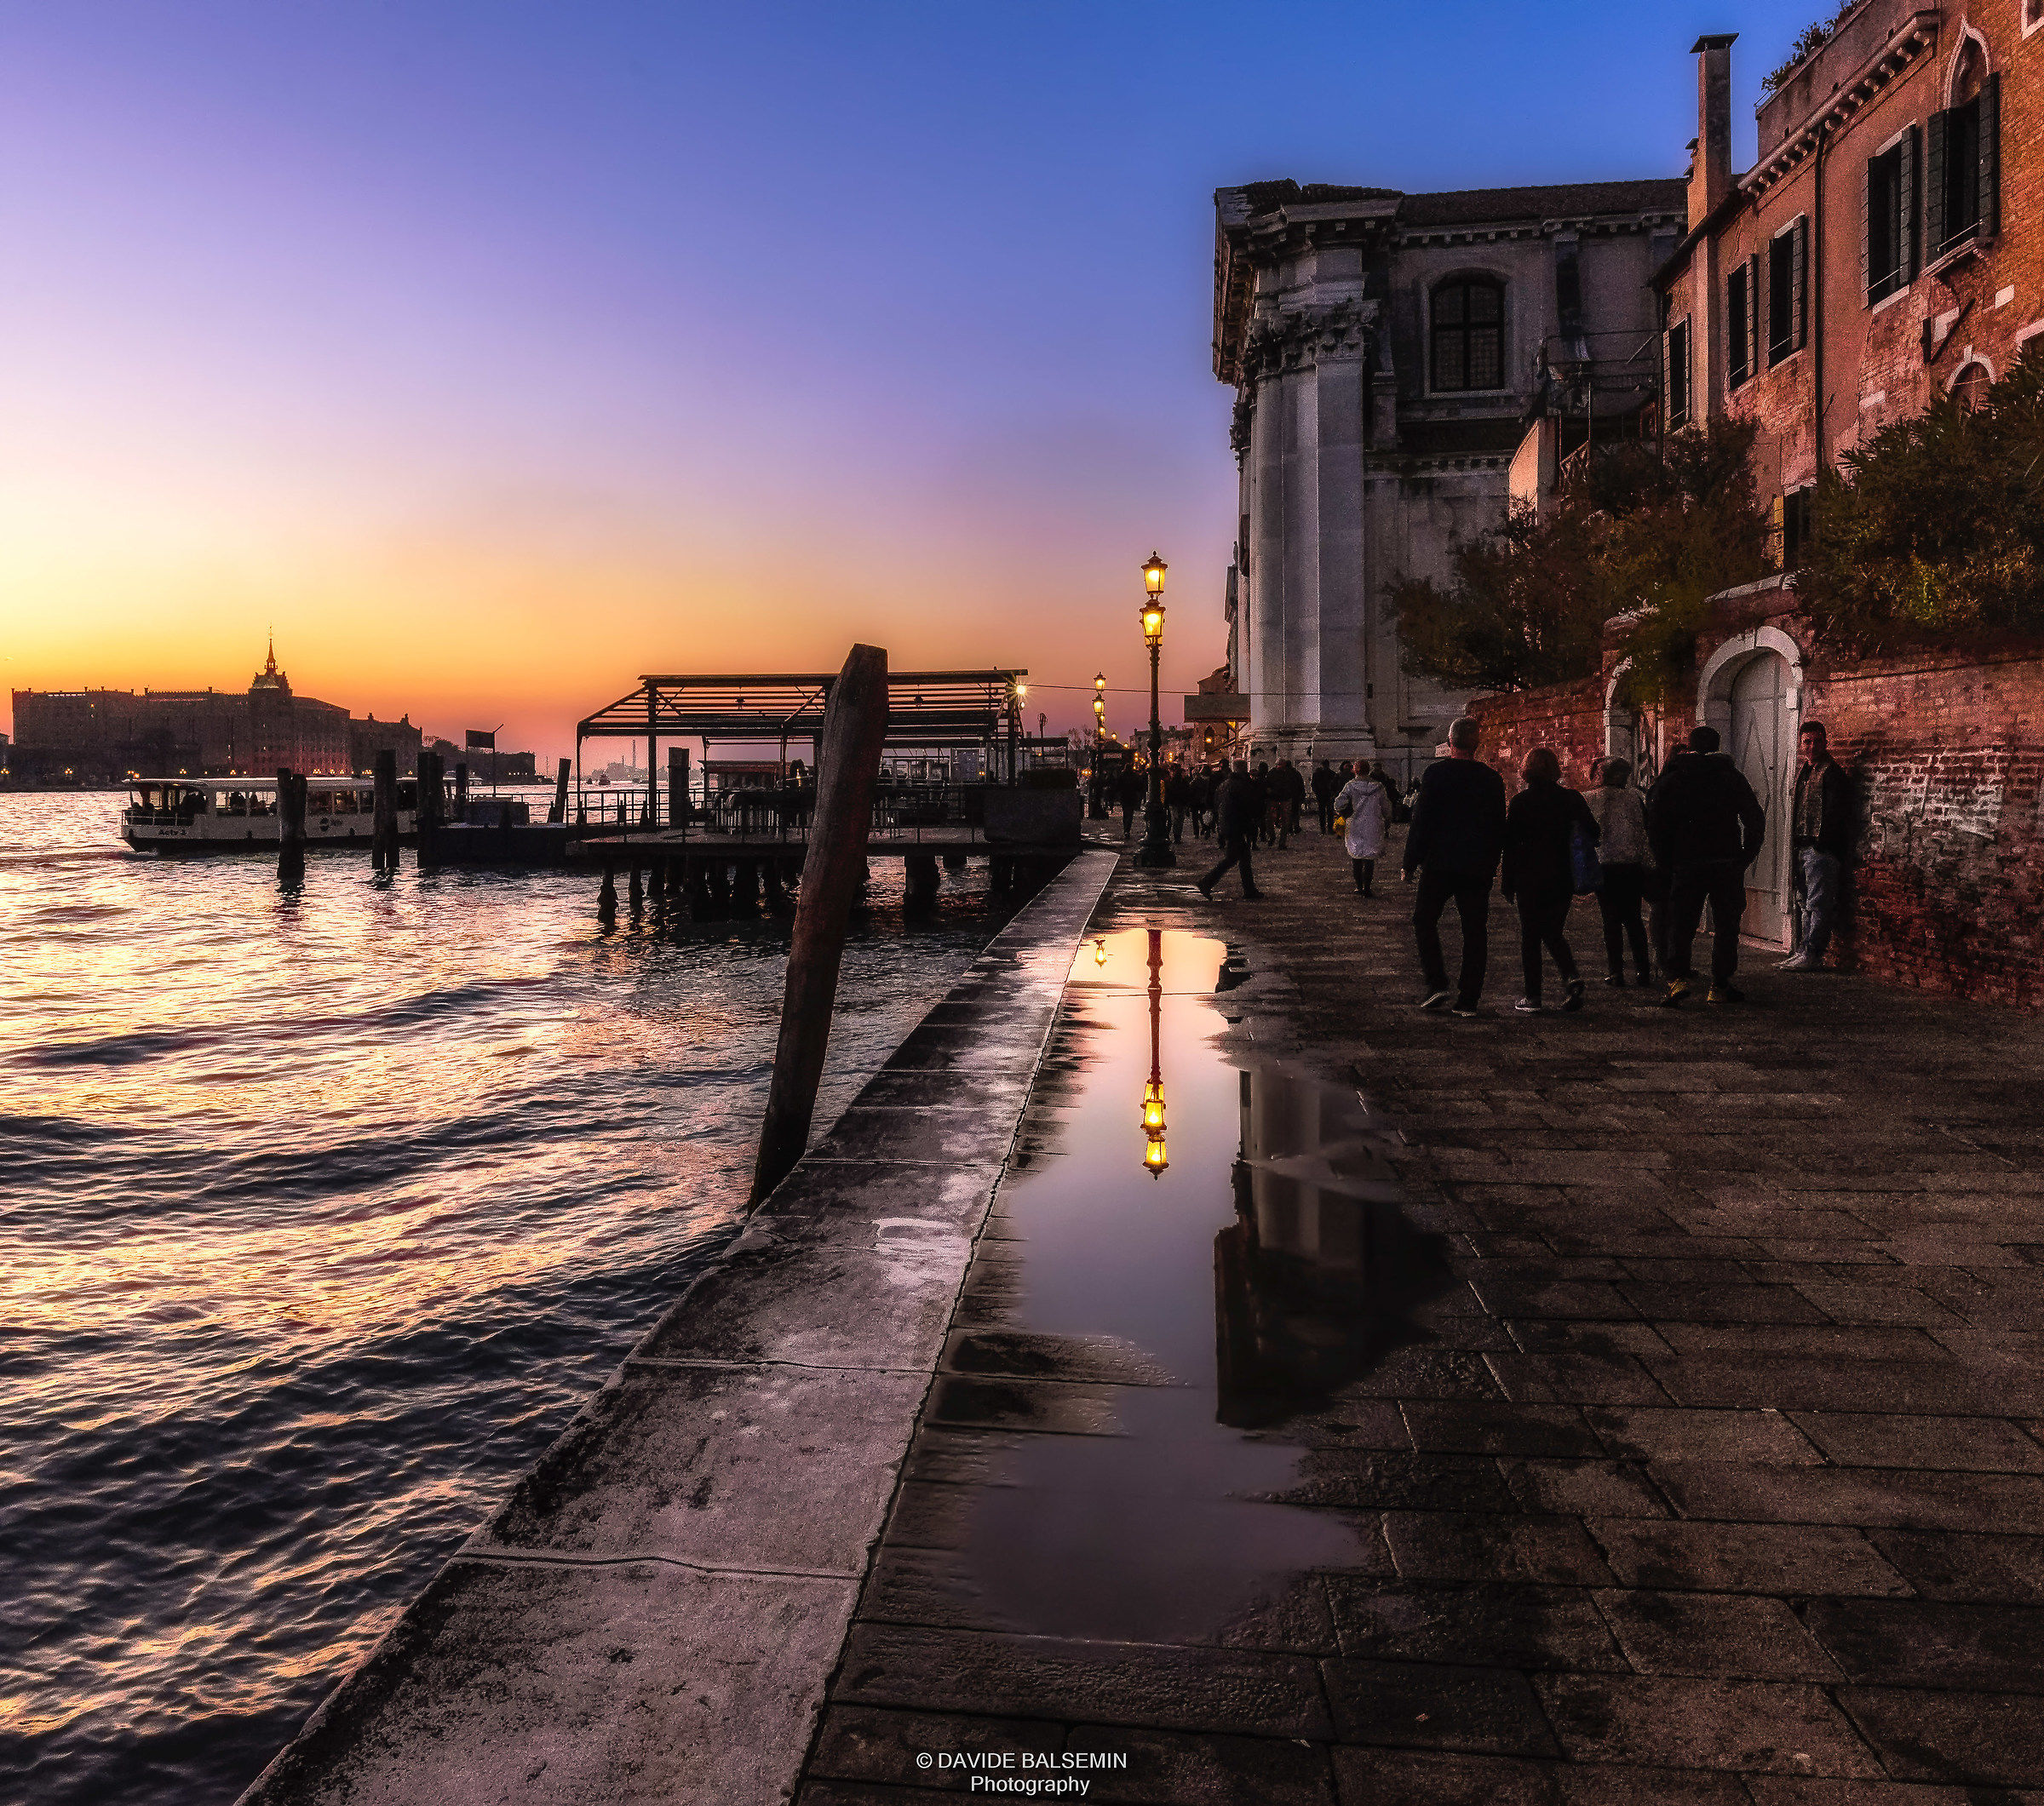 Walking in a Venetian sunset...